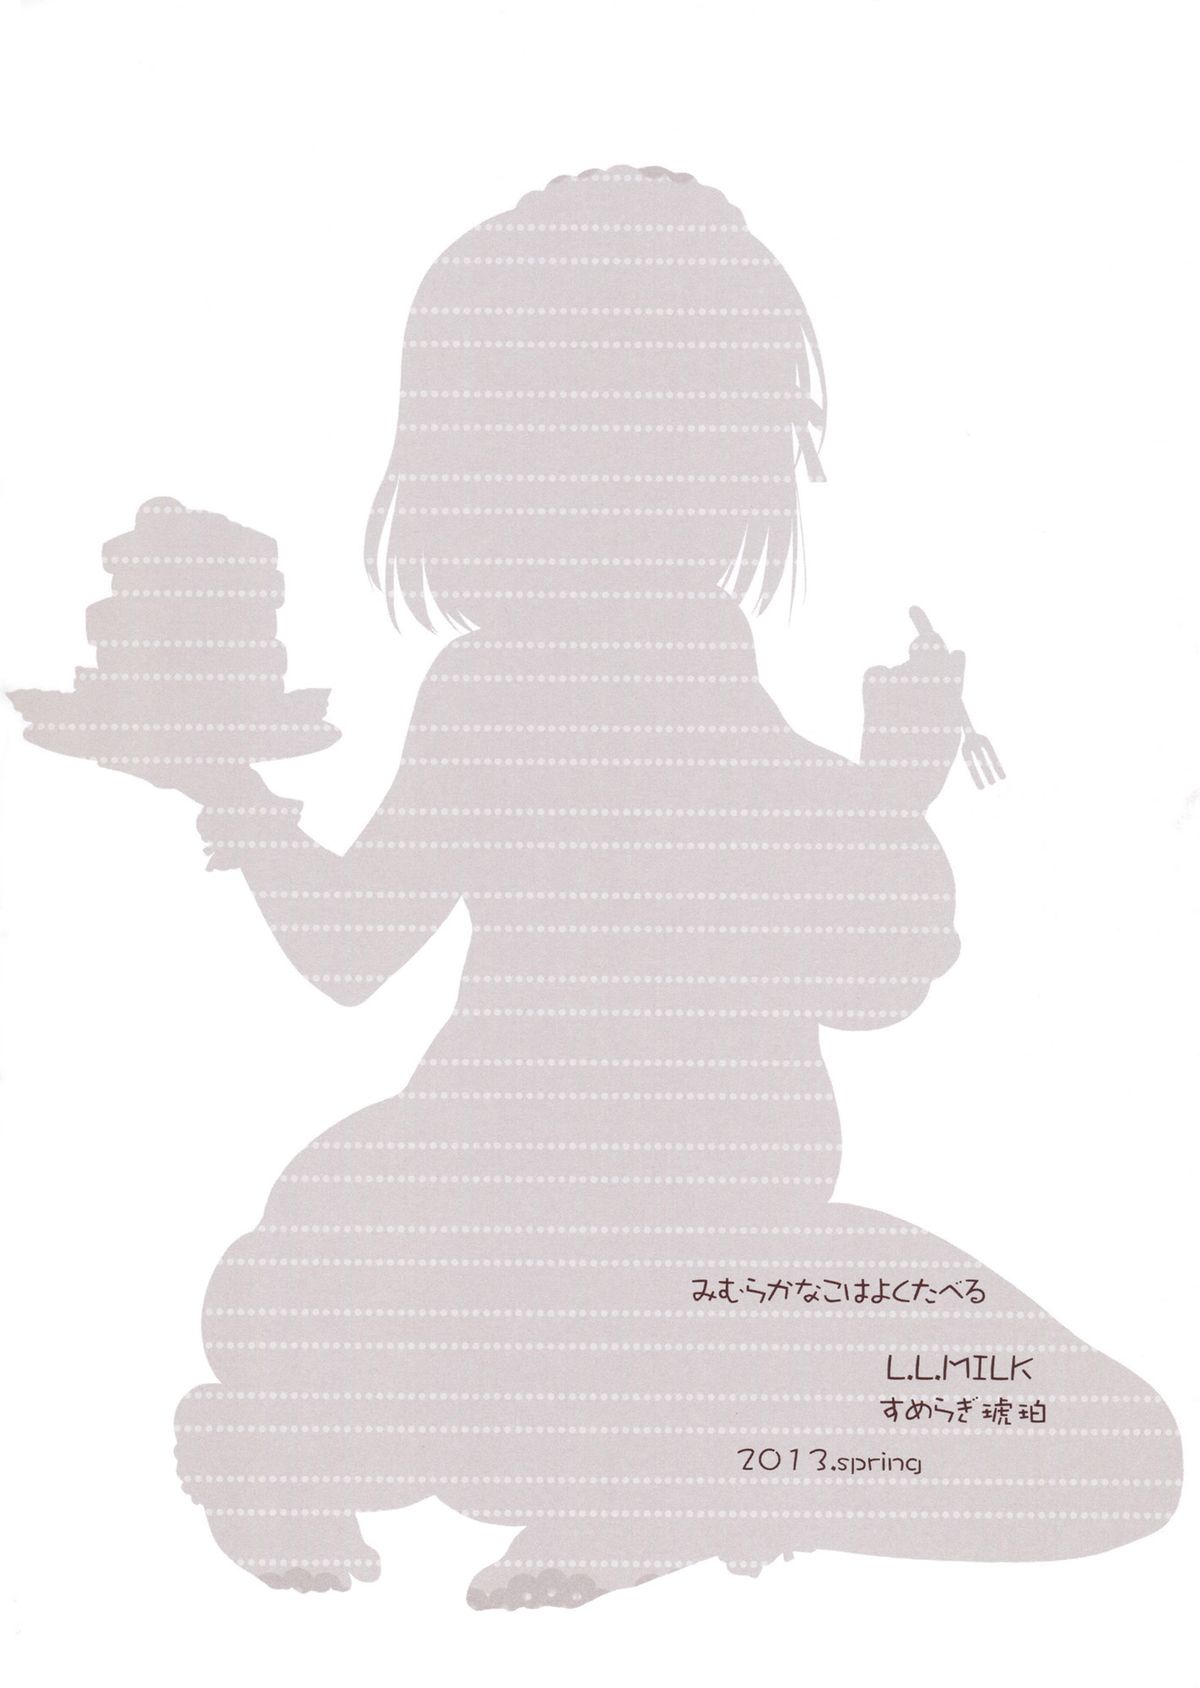 (こみトレ21) [L.L.MILK (すめらぎ琥珀)] 三村かな子はよく食べる (アイドルマスター シンデレラガールズ) [英訳]